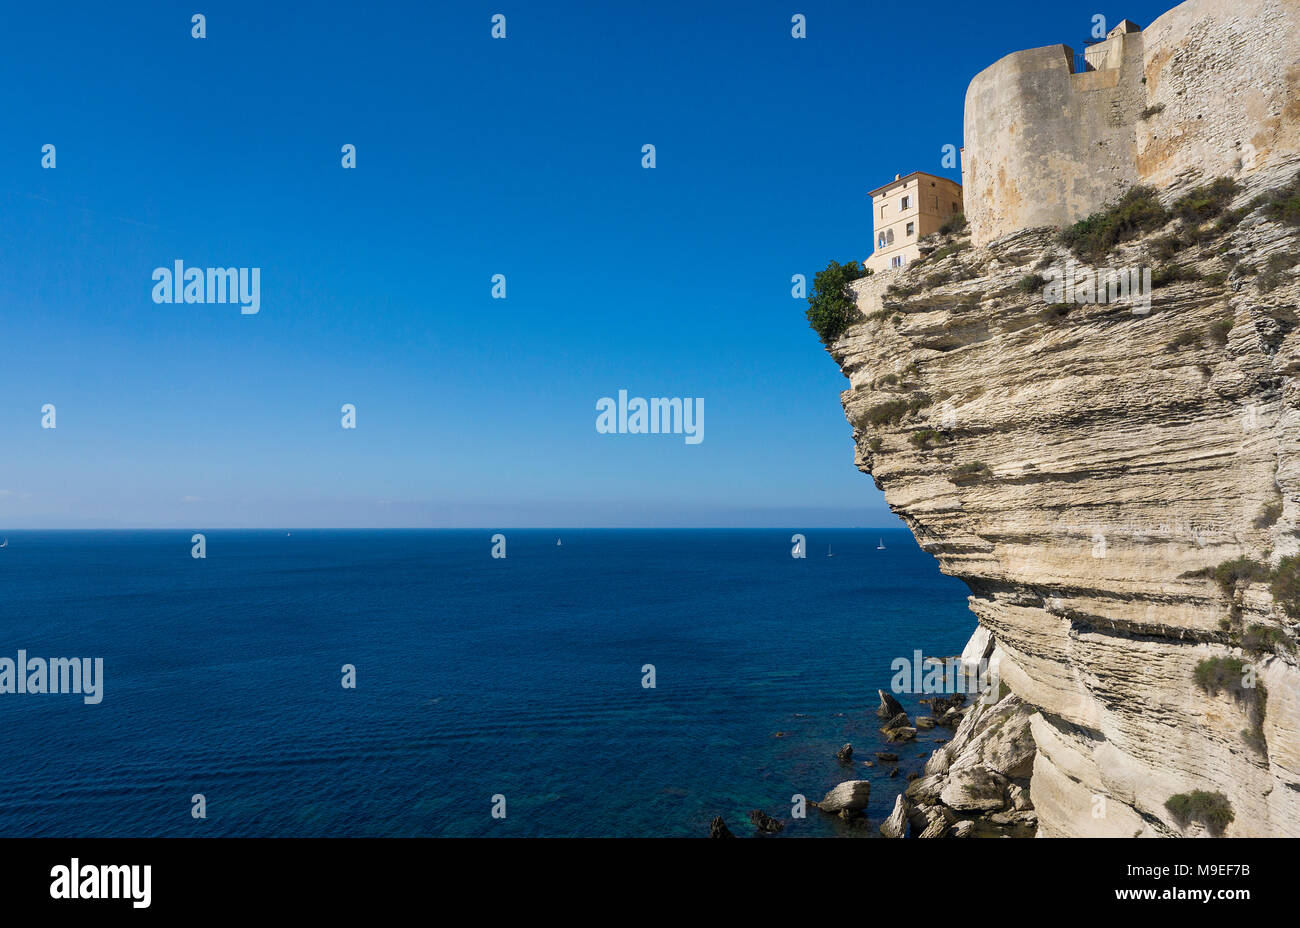 La ciudadela de Bonifacio, construido sobre el acantilado chalkstone, Estrecho de Bonifacio, Córcega, Francia, el Mediterráneo, Europa Foto de stock